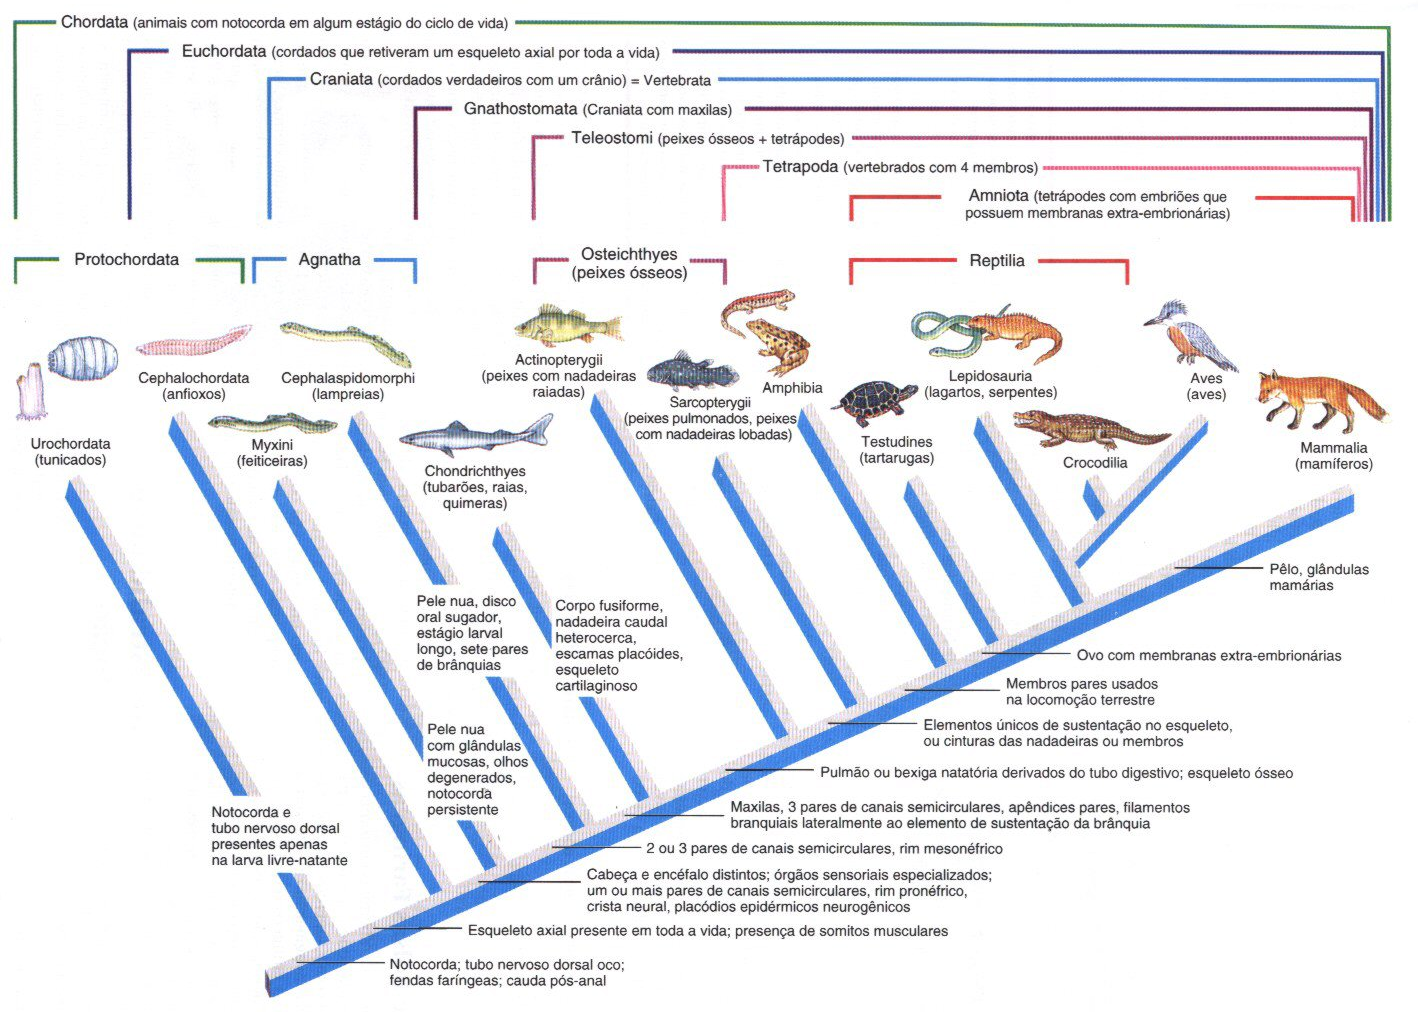 2 FUNDAMENTOS Taxionomia ou zoologia sistemática Divisões: a) classificação - arranjo dos tipos de animais em uma hierarquia; b) nomenclatura - procedimento de dar nomes aos tipos e grupos de animais